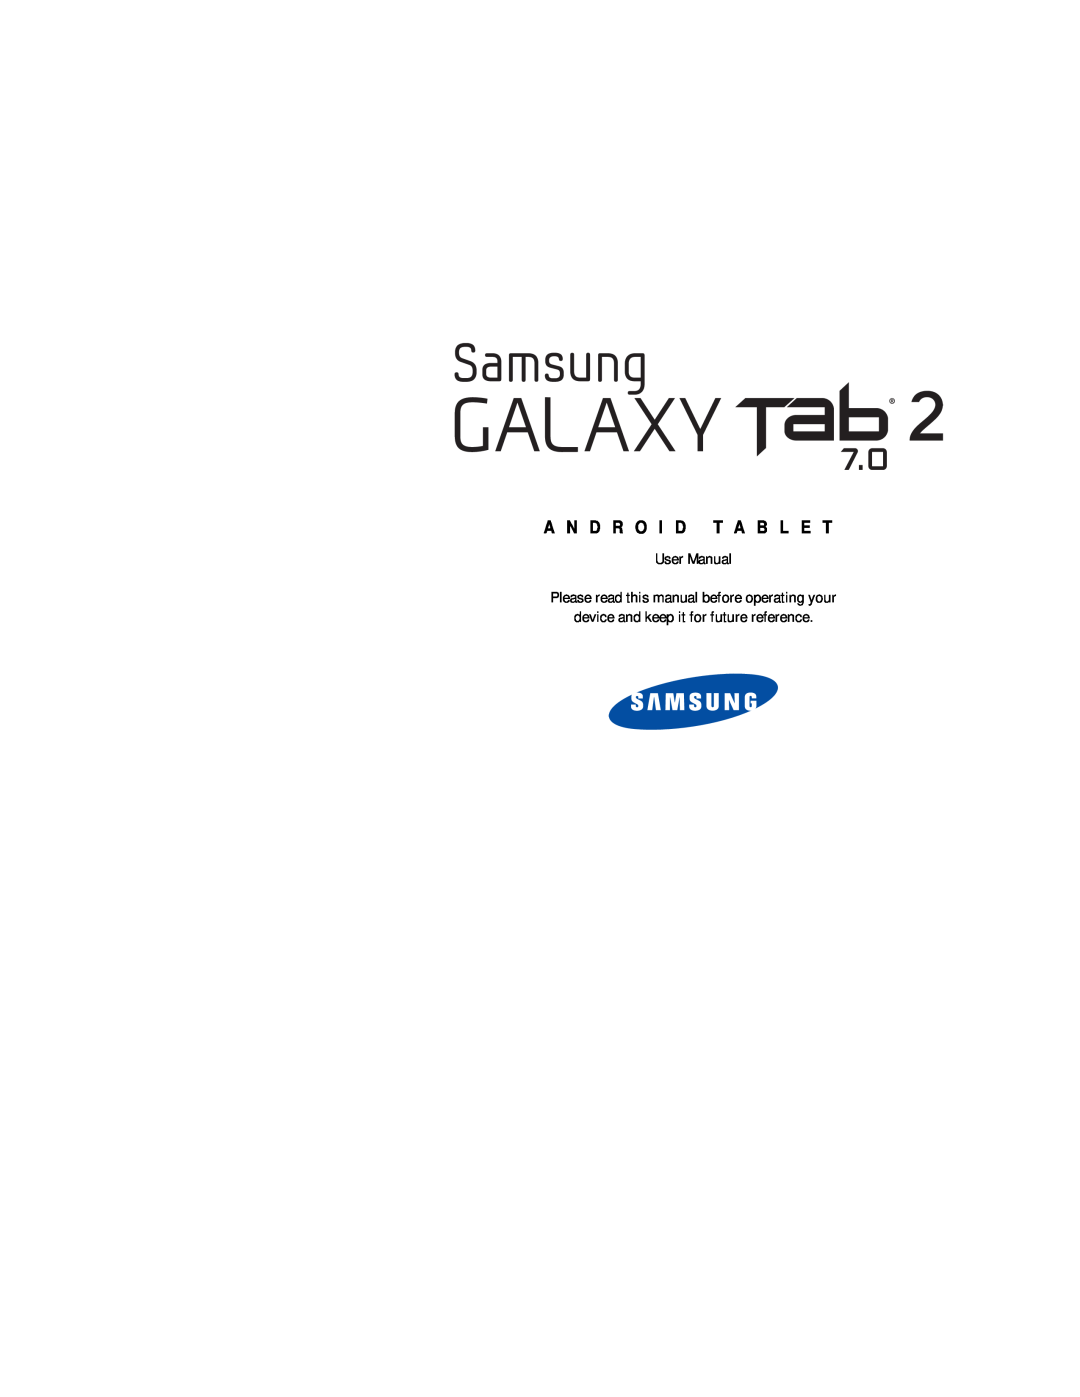 Galaxy Tab 2 7.0 Wi-Fi GT-P3113ZWYXAR